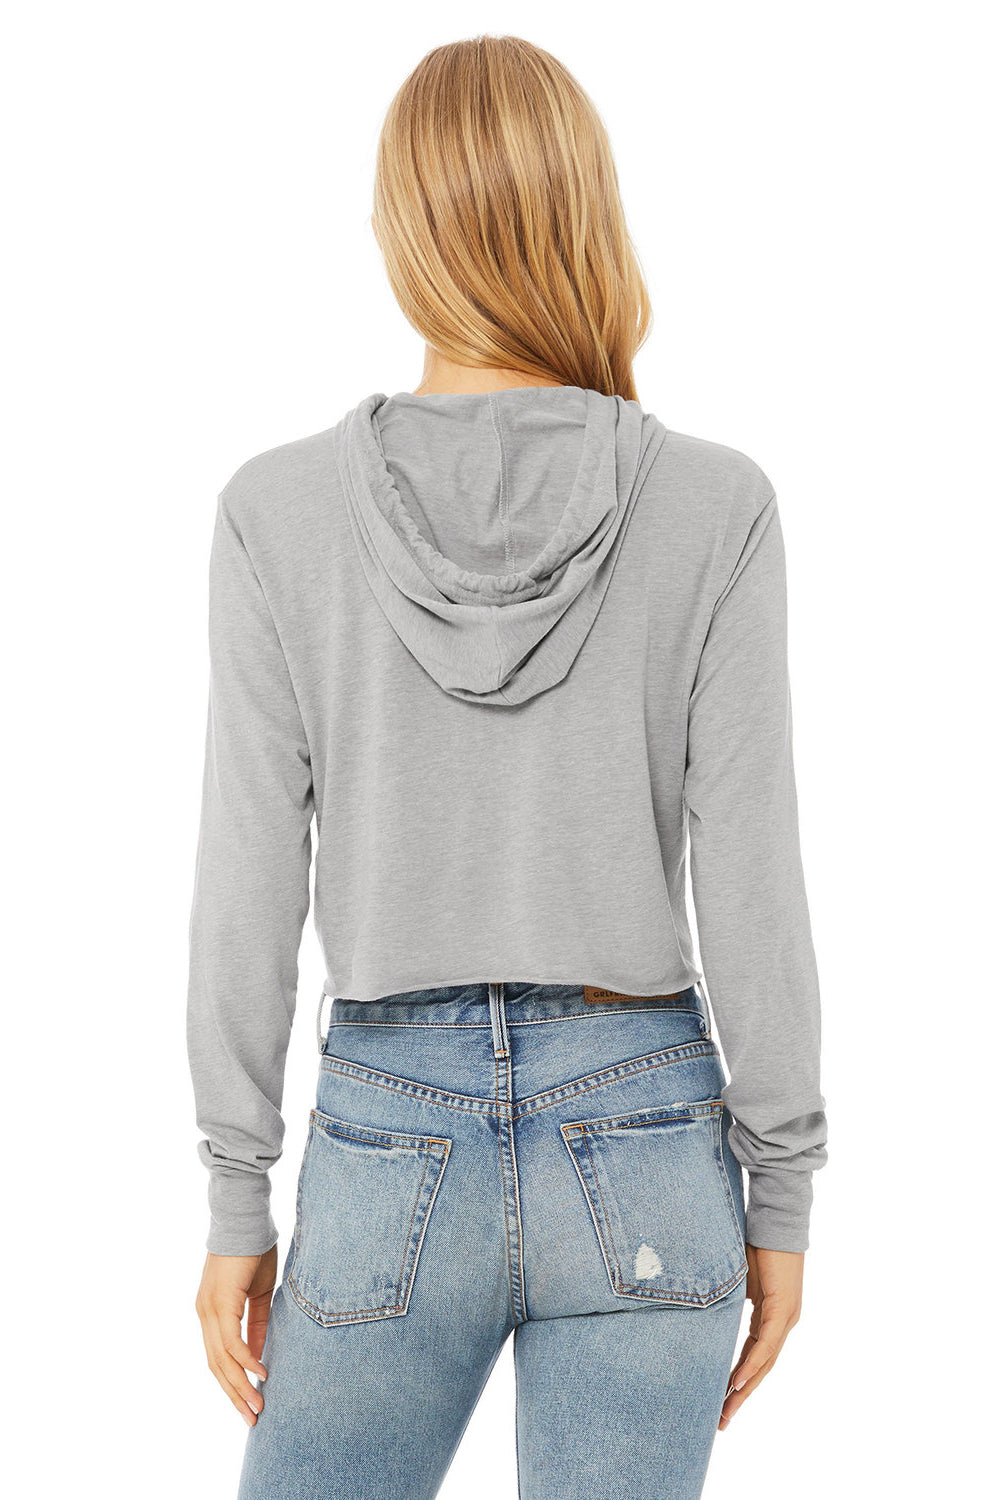 Bella + Canvas 8512 Womens Crop Long Sleeve Hooded Sweatshirt Hoodie Athletic Grey Model Back